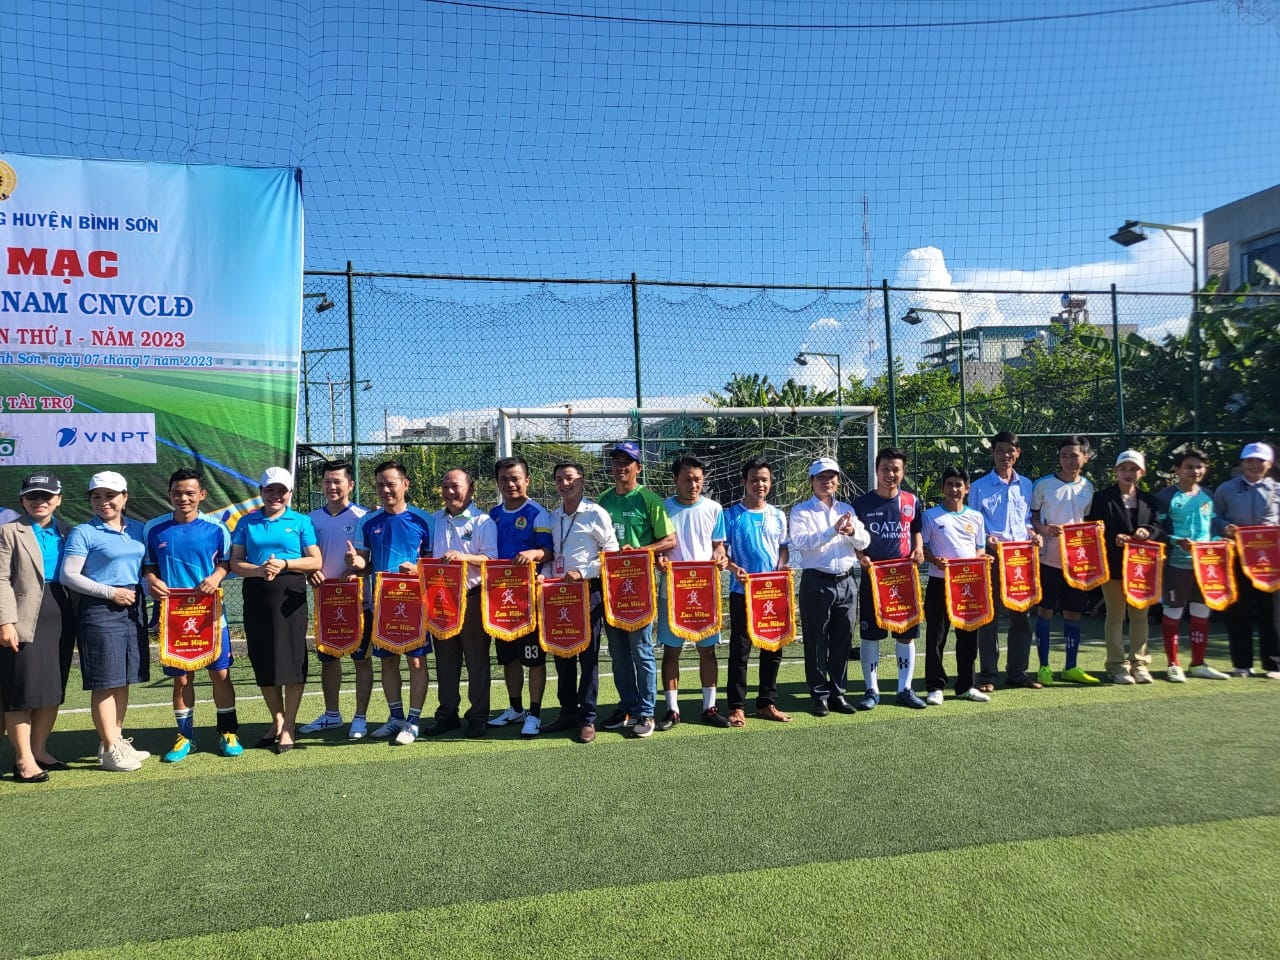 Đại diện 23 đội bóng thuộc 113 CĐCS nhận cờ lưu niệm từ BTC.